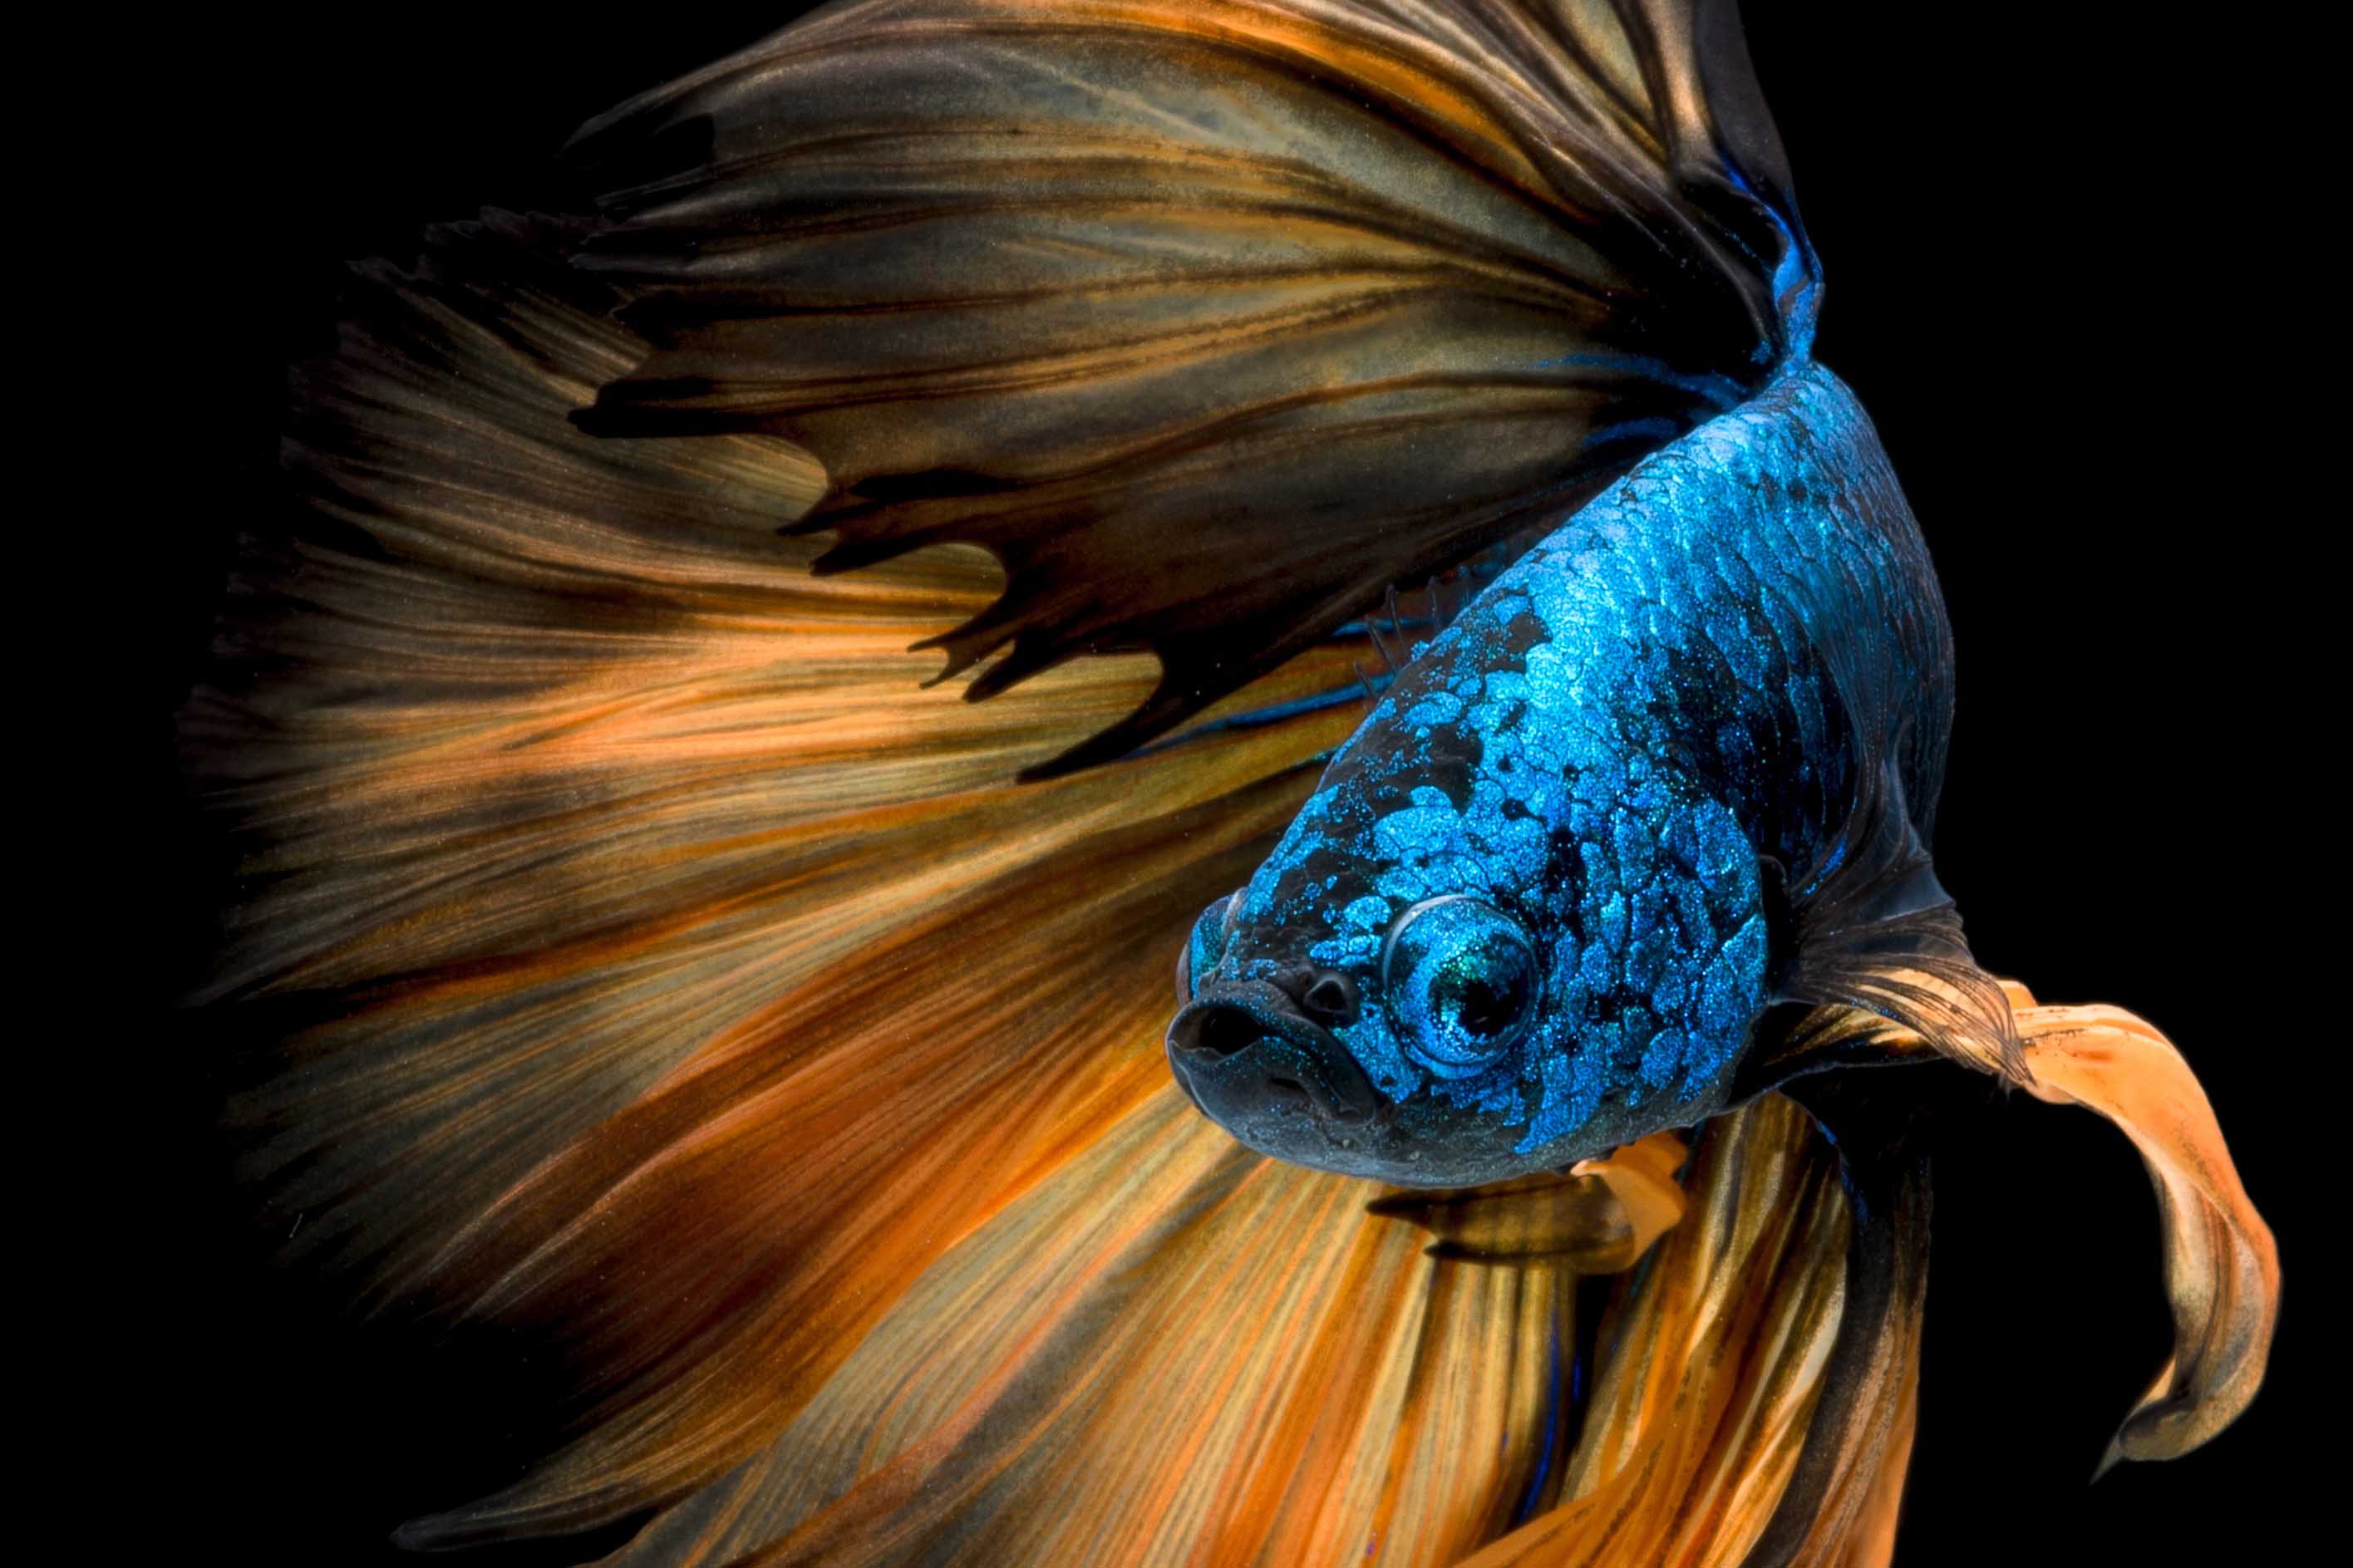 Colorful betta fish